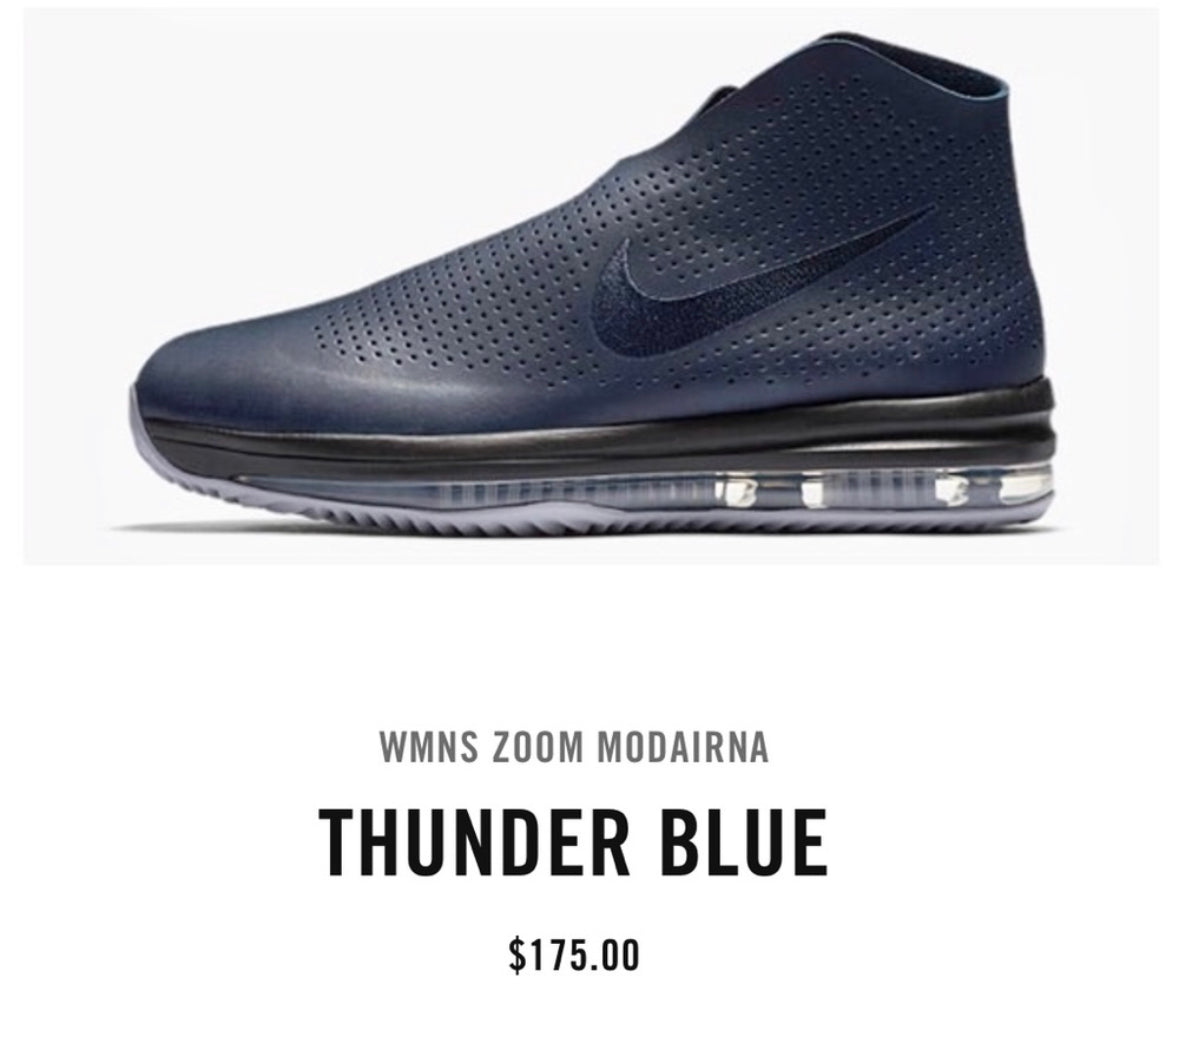 Nike - Thunder Blue Zoom Modairna